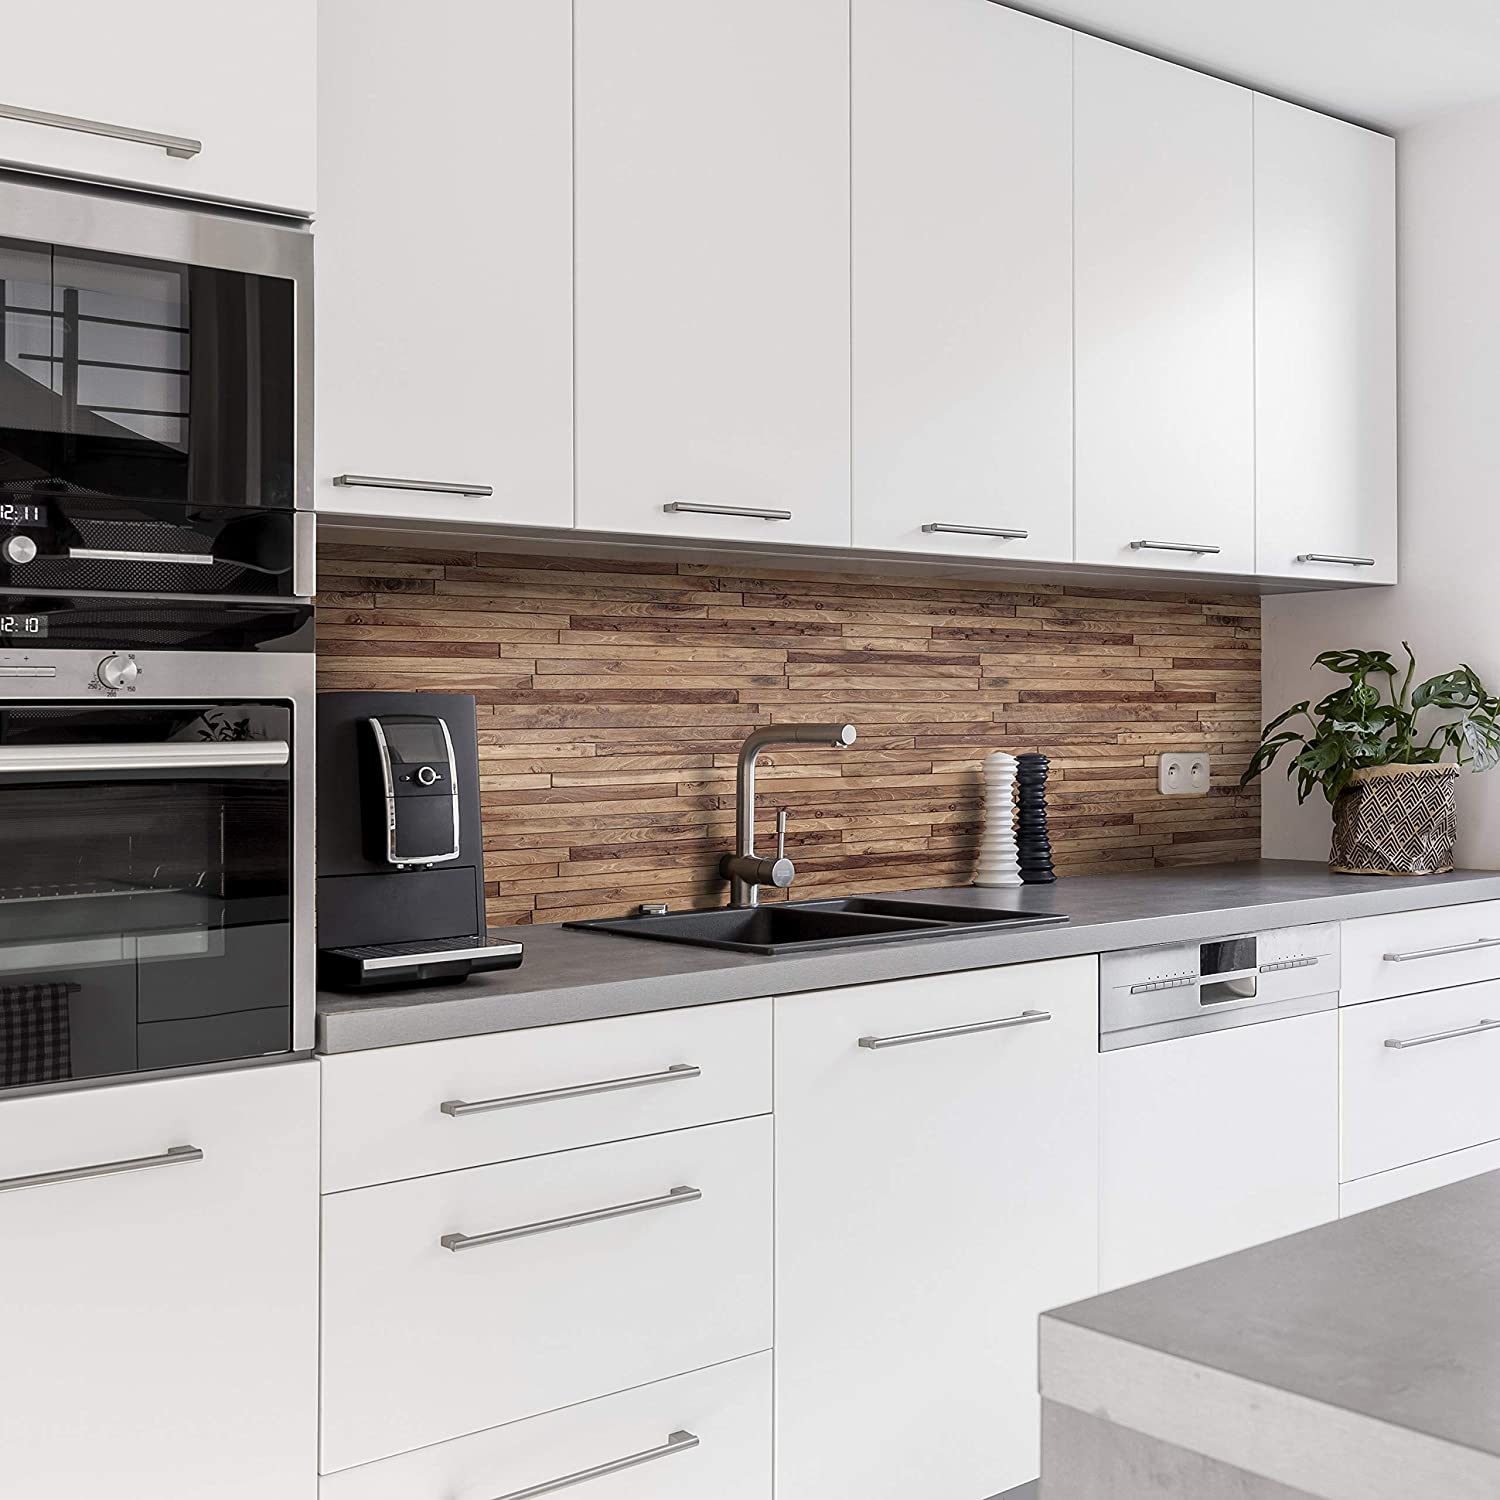 Küchenrückwand mit Holz V1 Motiv als Fliesenersatz und Spritzschutz